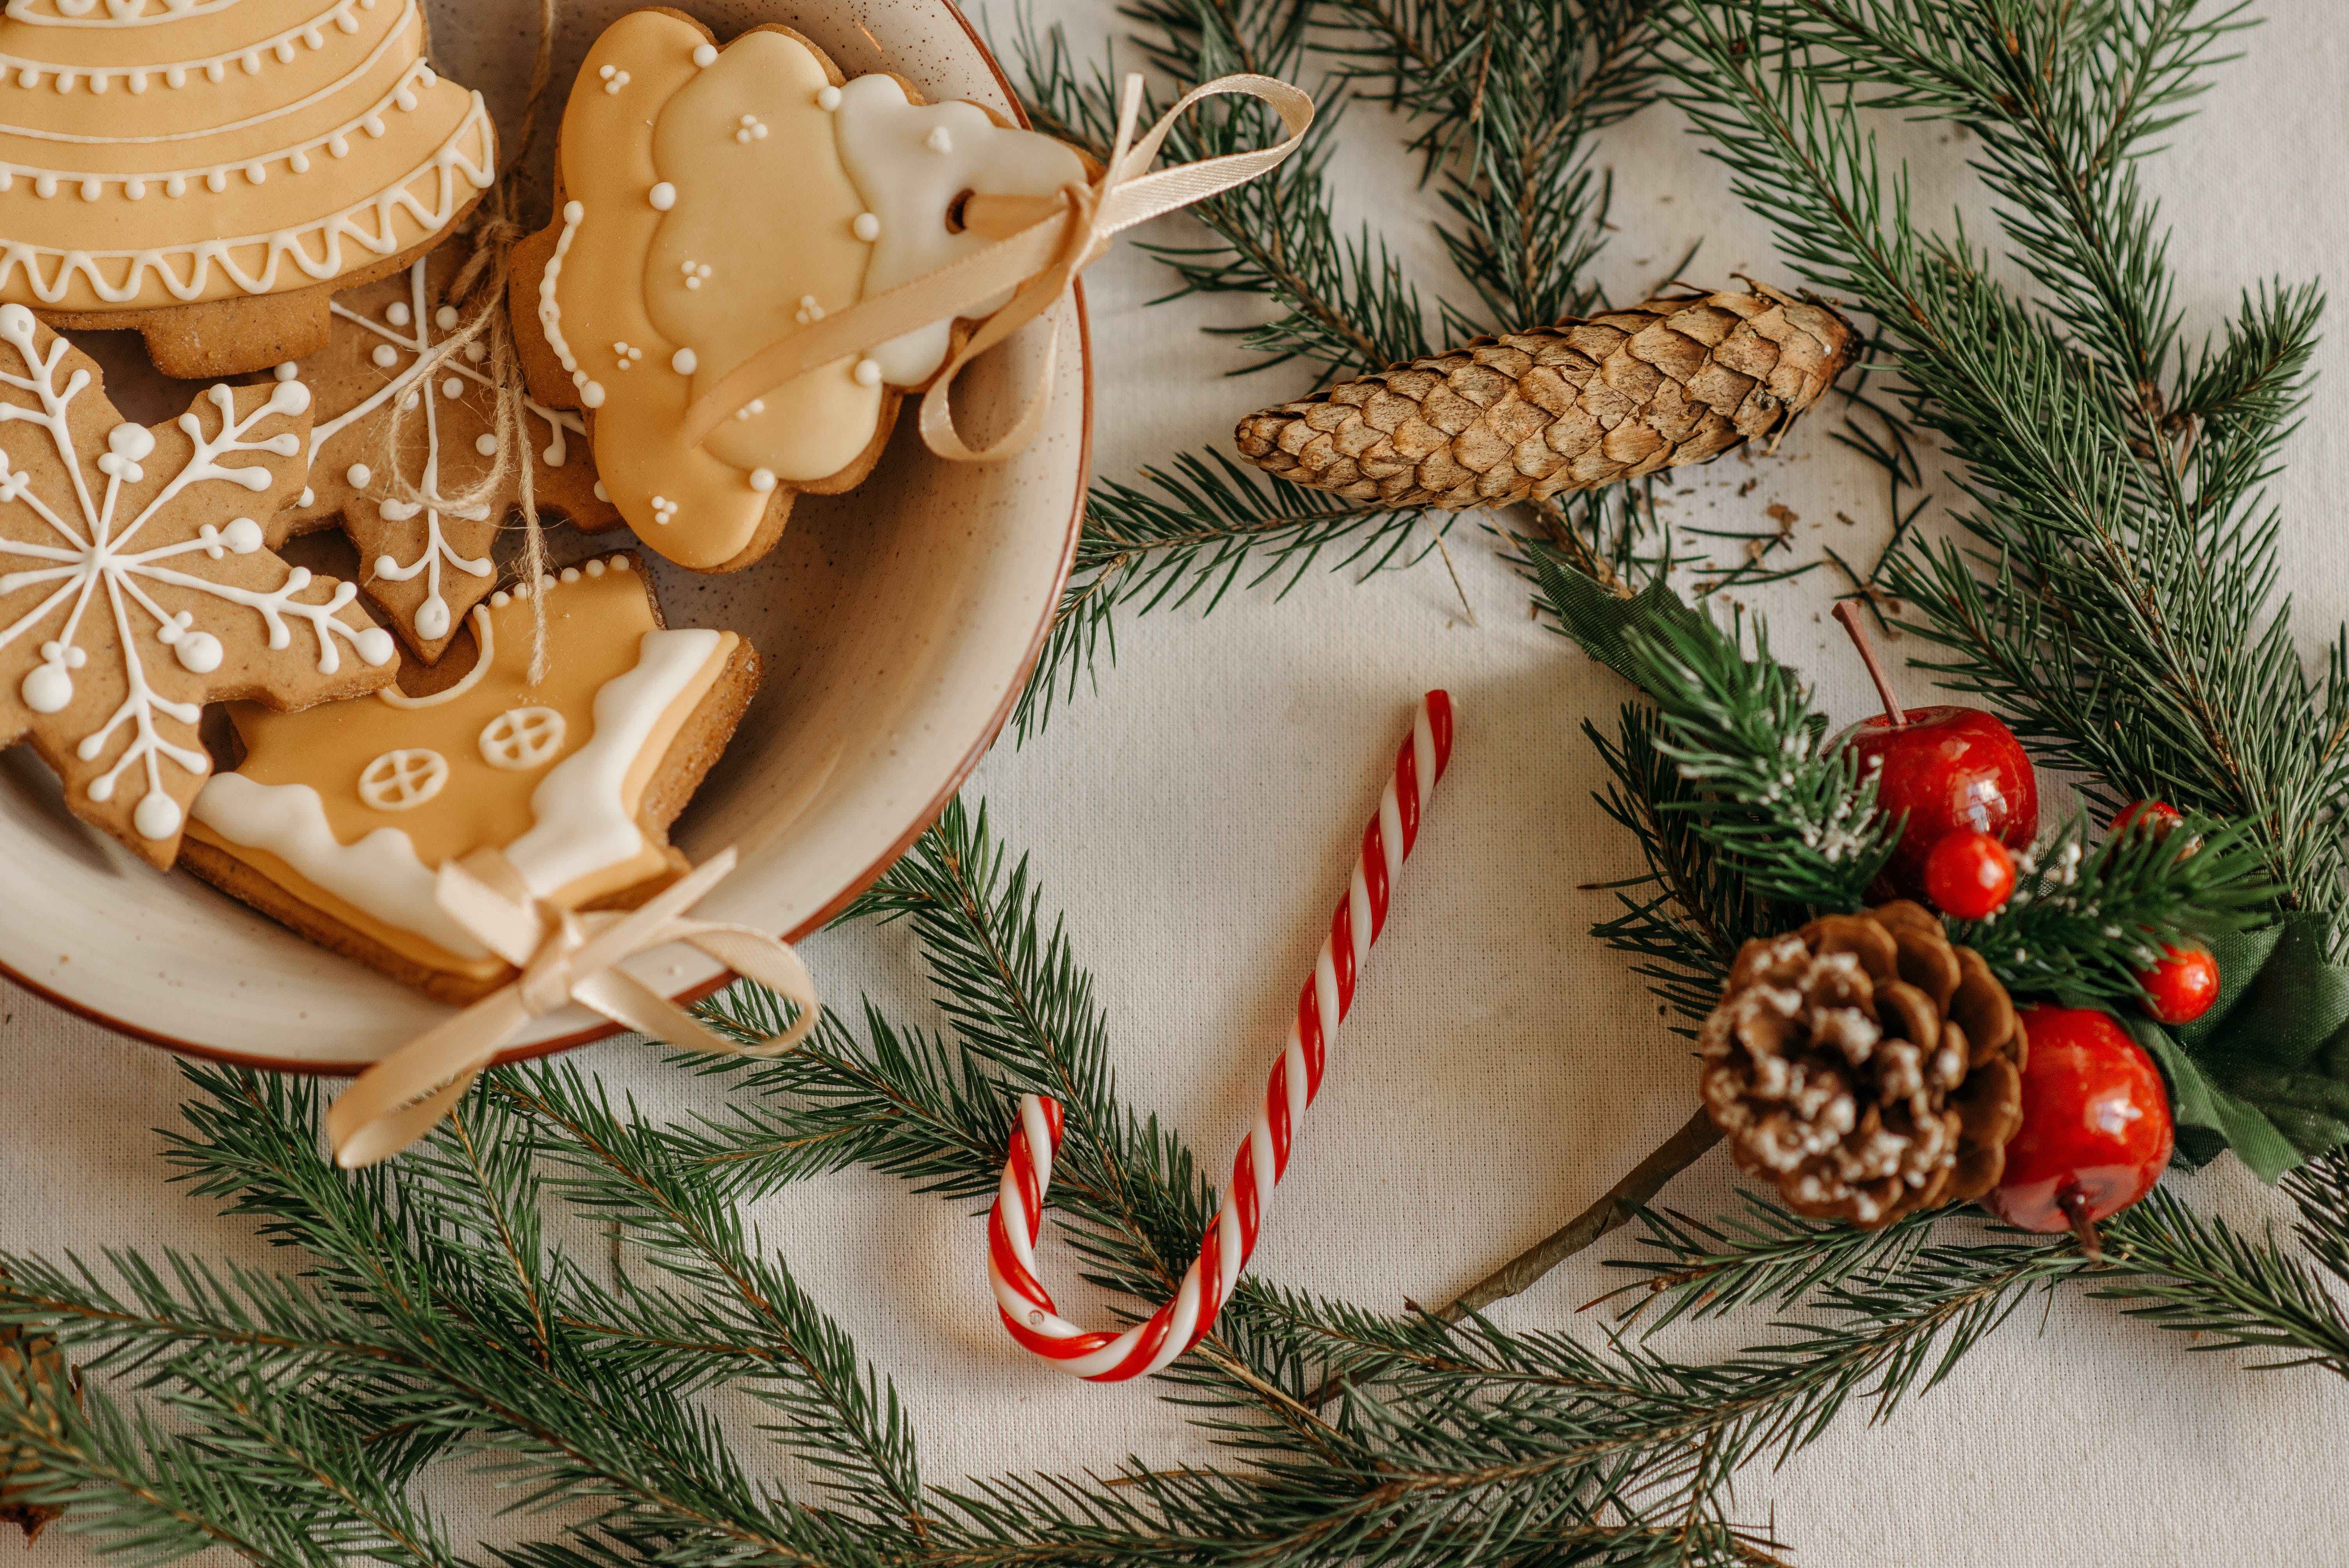 Las 3 recetas de galletas navideñas que puedes probar estas fiestas